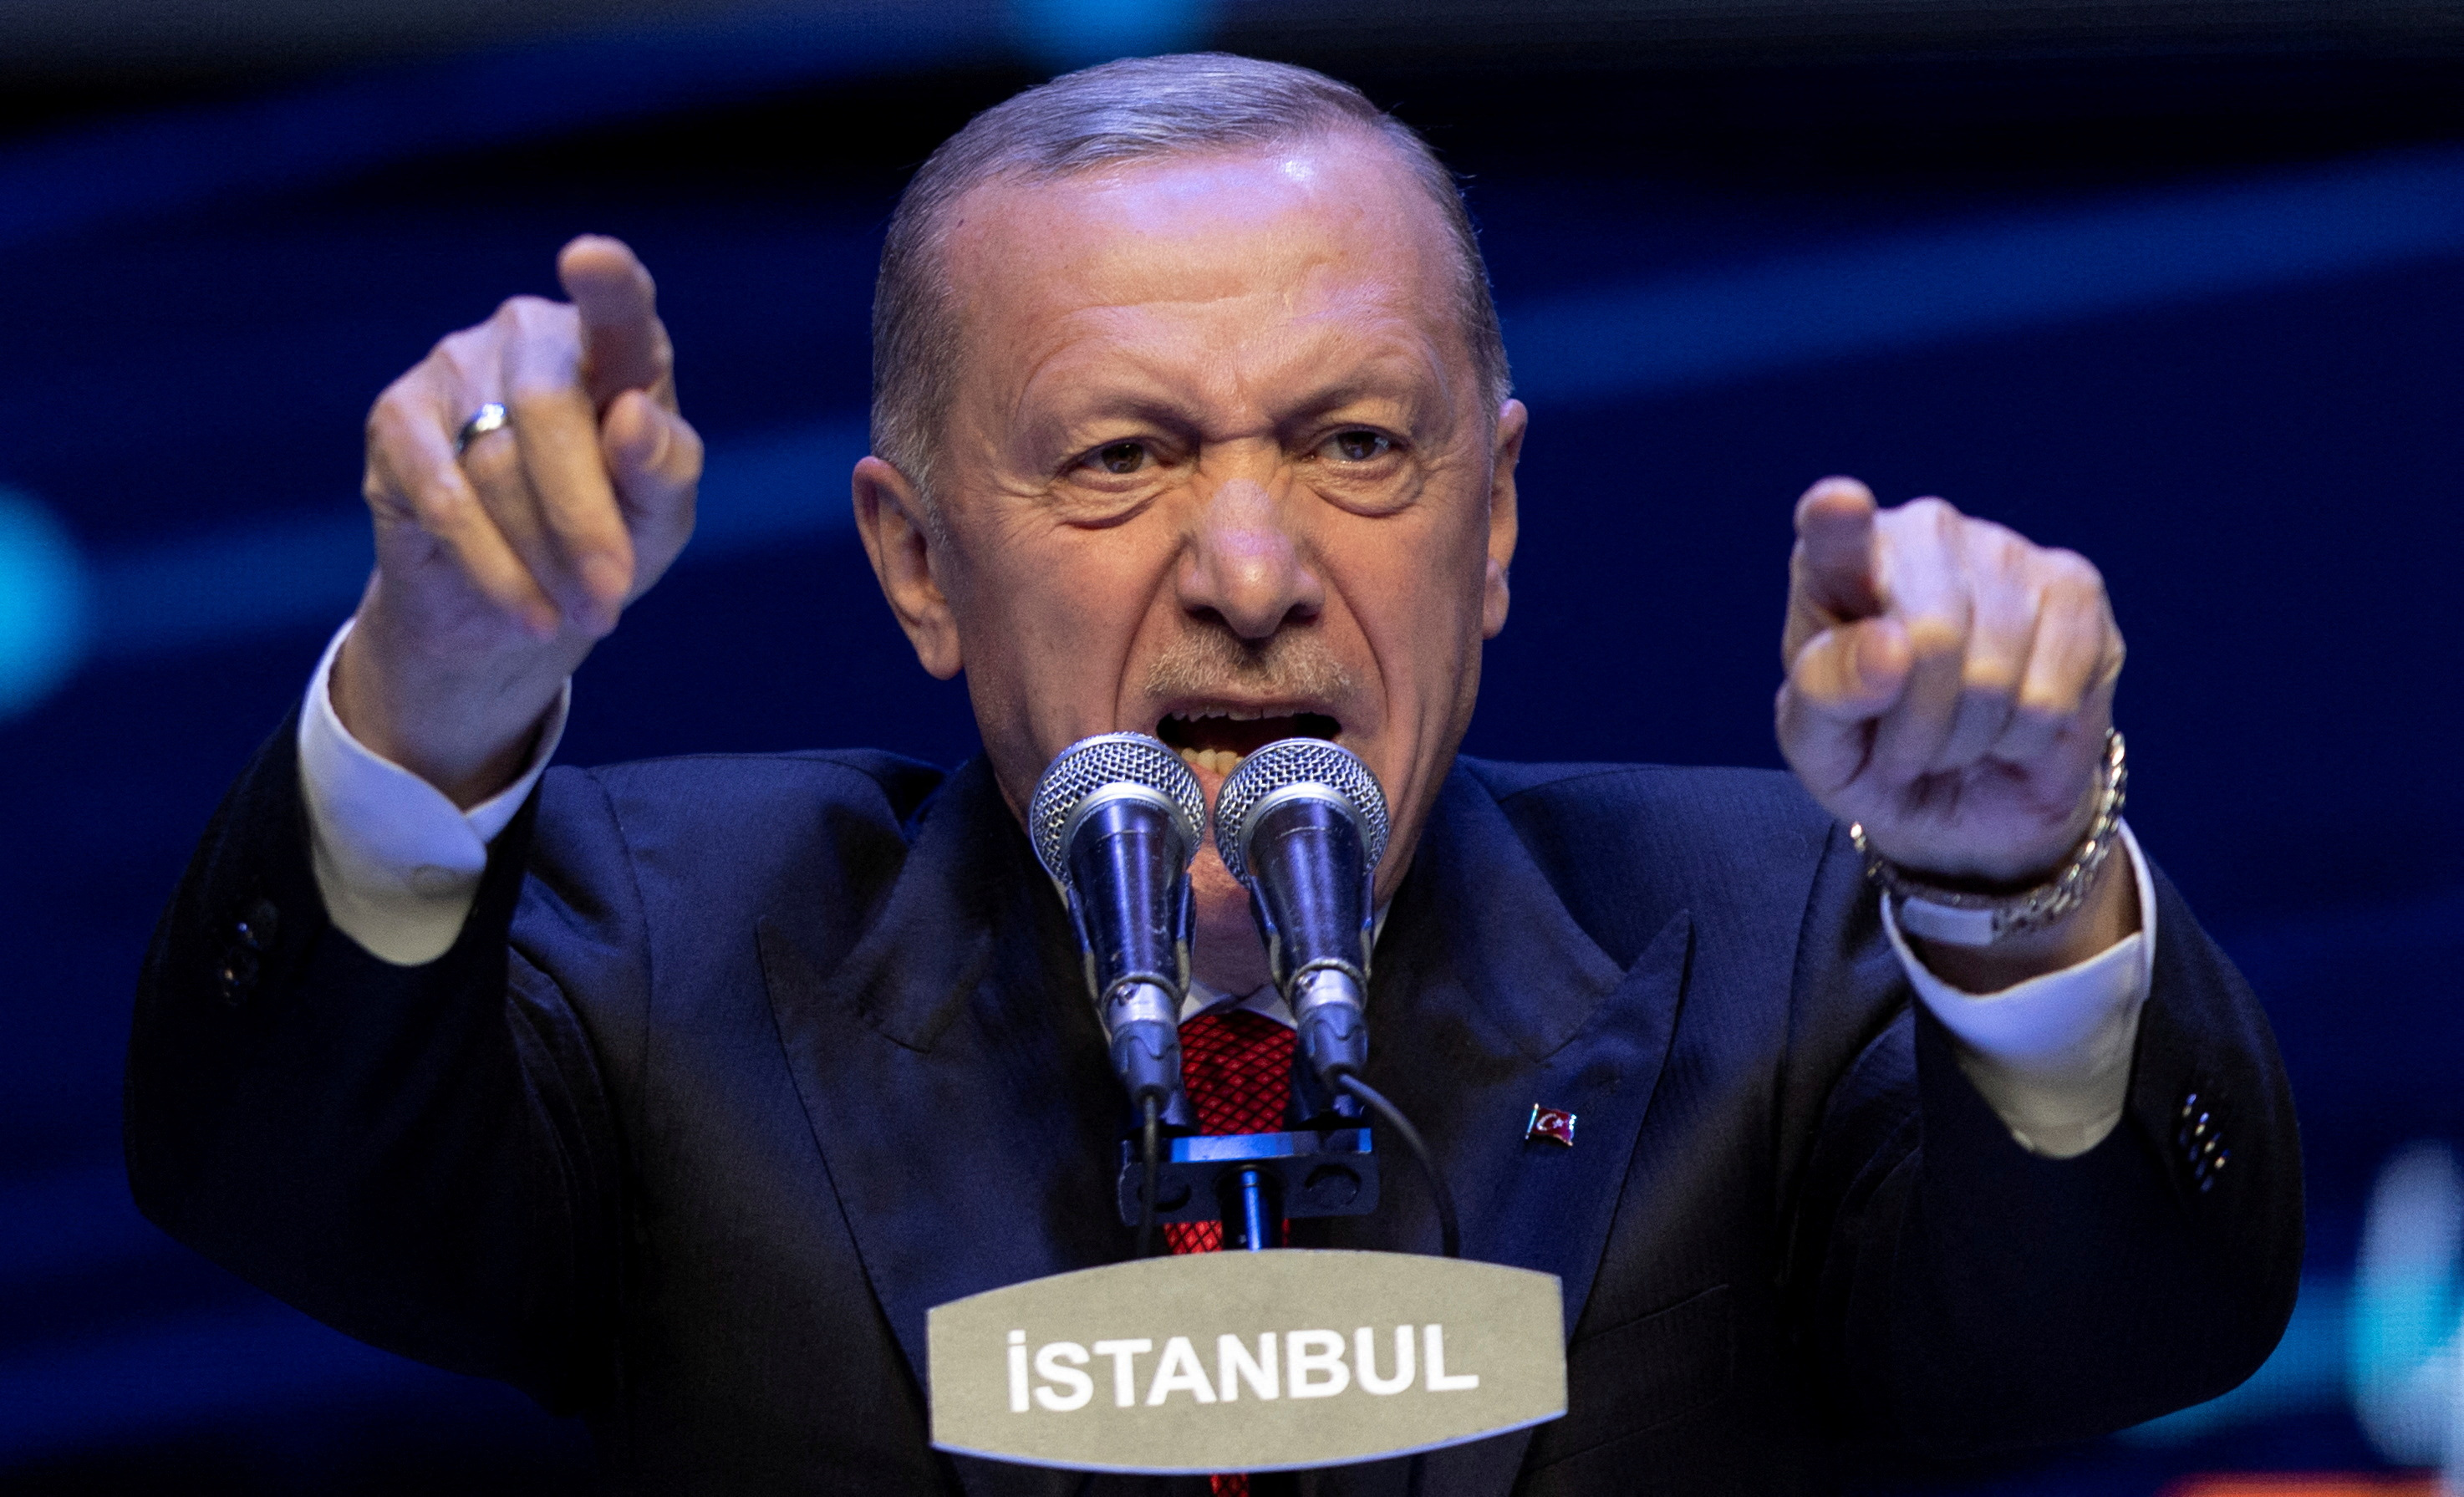 Απασφάλισε ο Ερντογάν - «Η αντιπολίτευση μιλά με τρομοκράτες, εγώ παίρνω οδηγίες από τον Θεό»